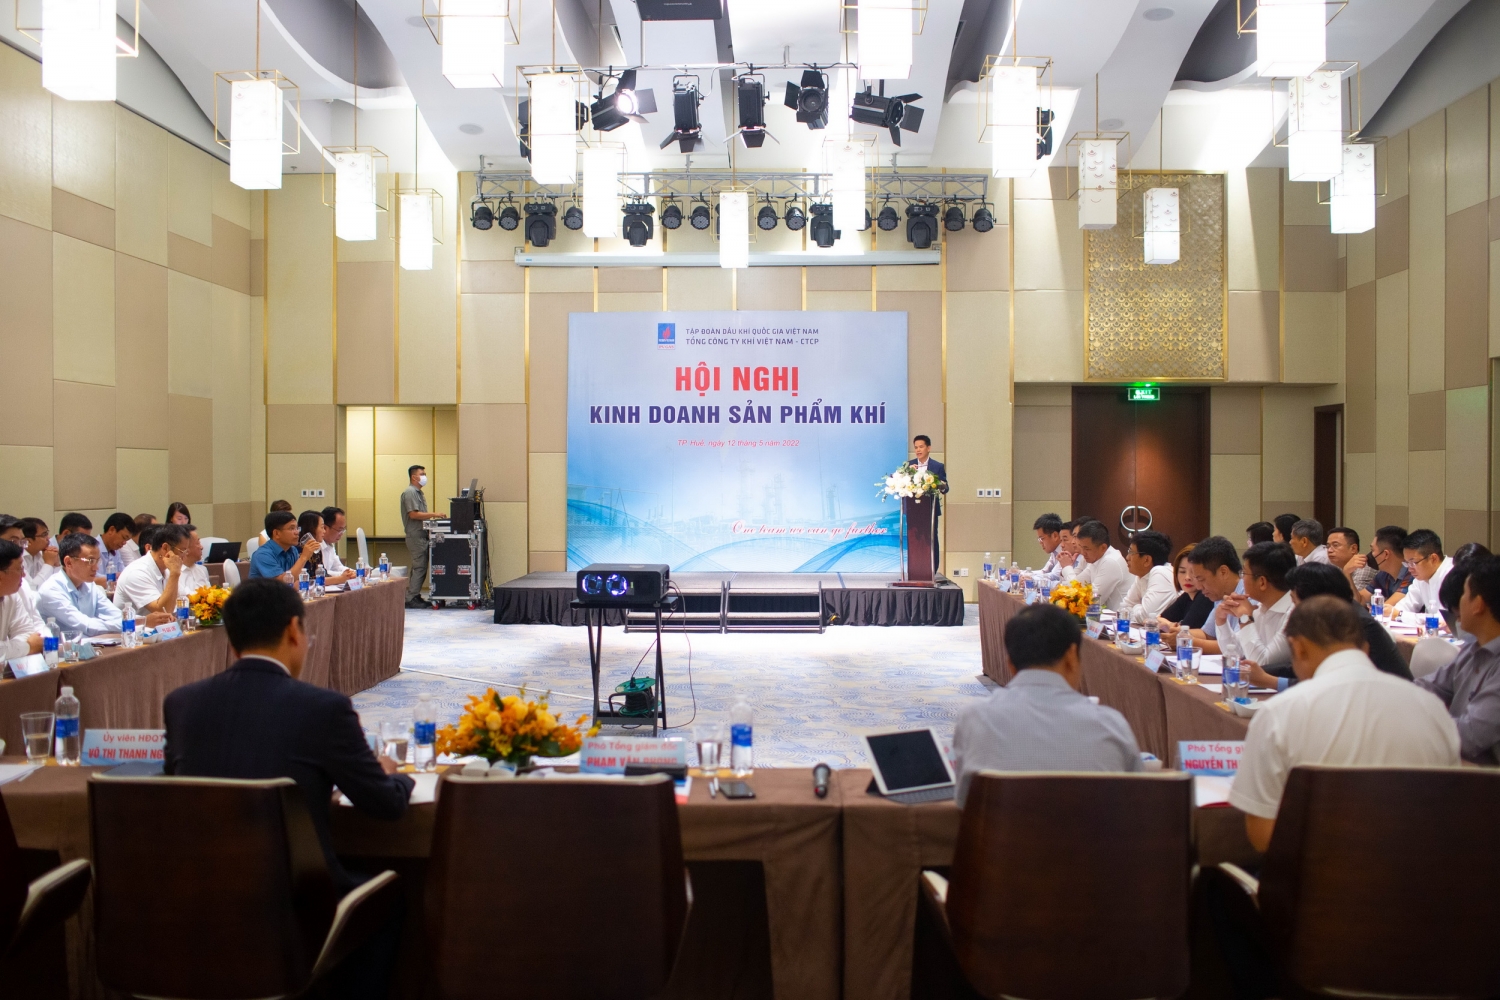 Hội nghị Kinh doanh sản phẩm khí PV GAS năm 2022